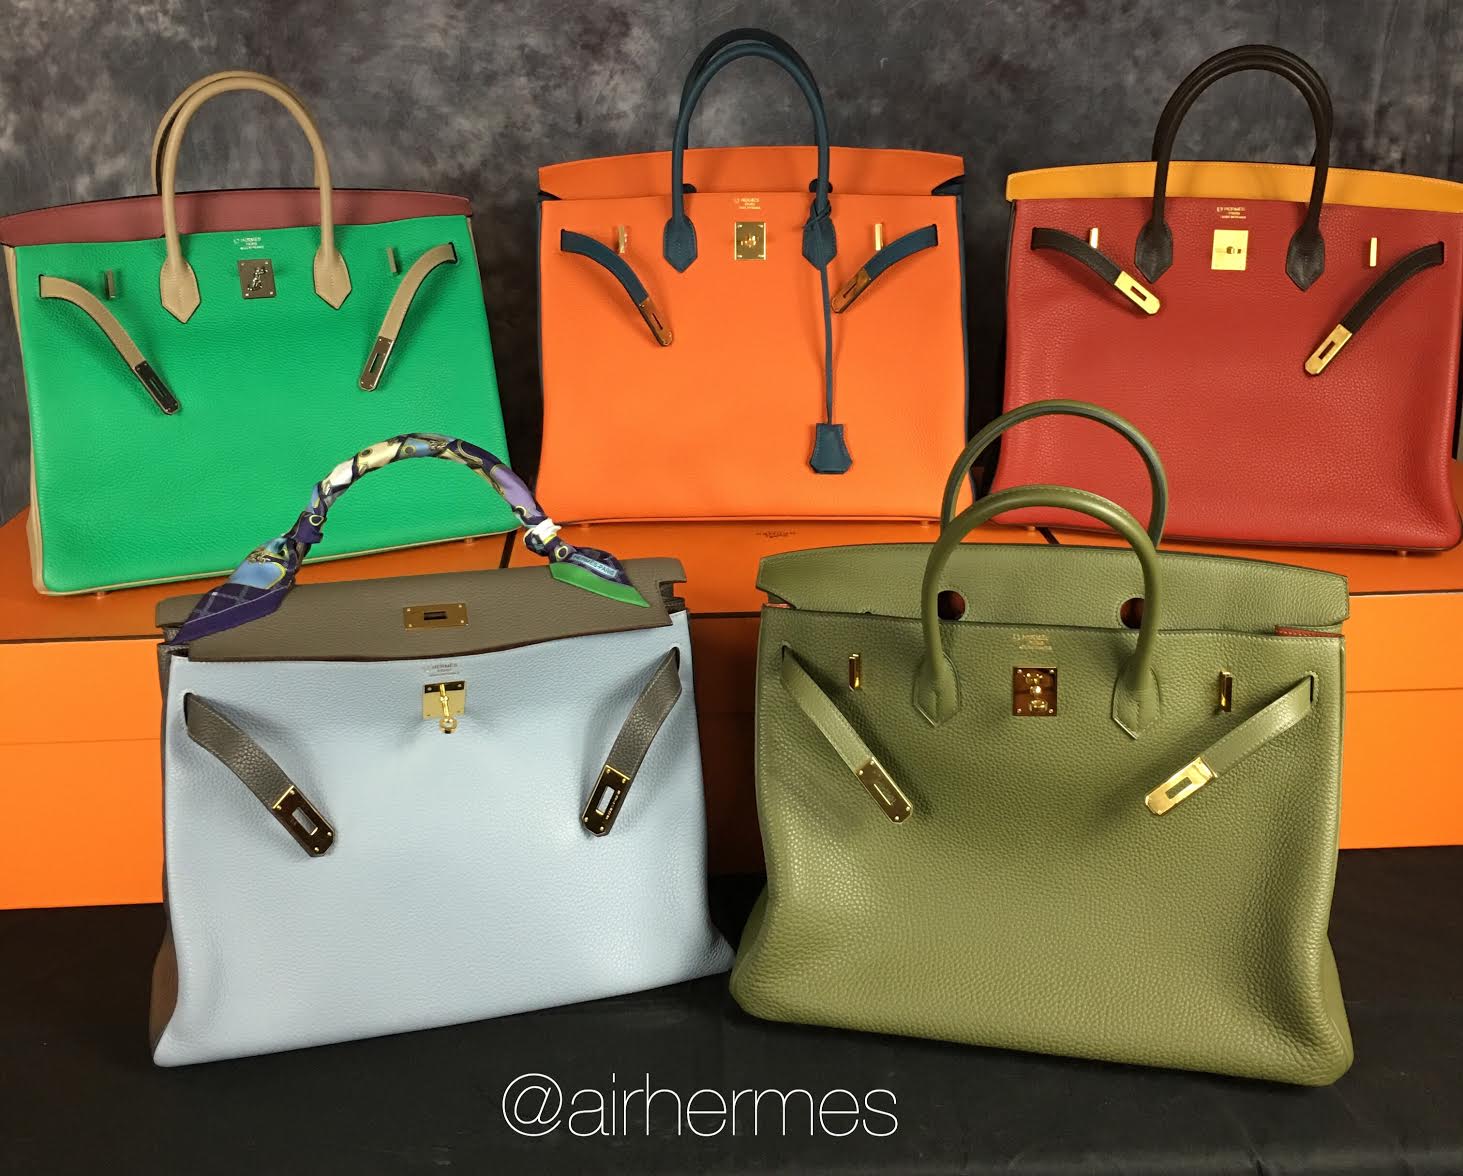 Let's Talk About Hermès Chèvre Leather, Are You a Fan? - PurseBop